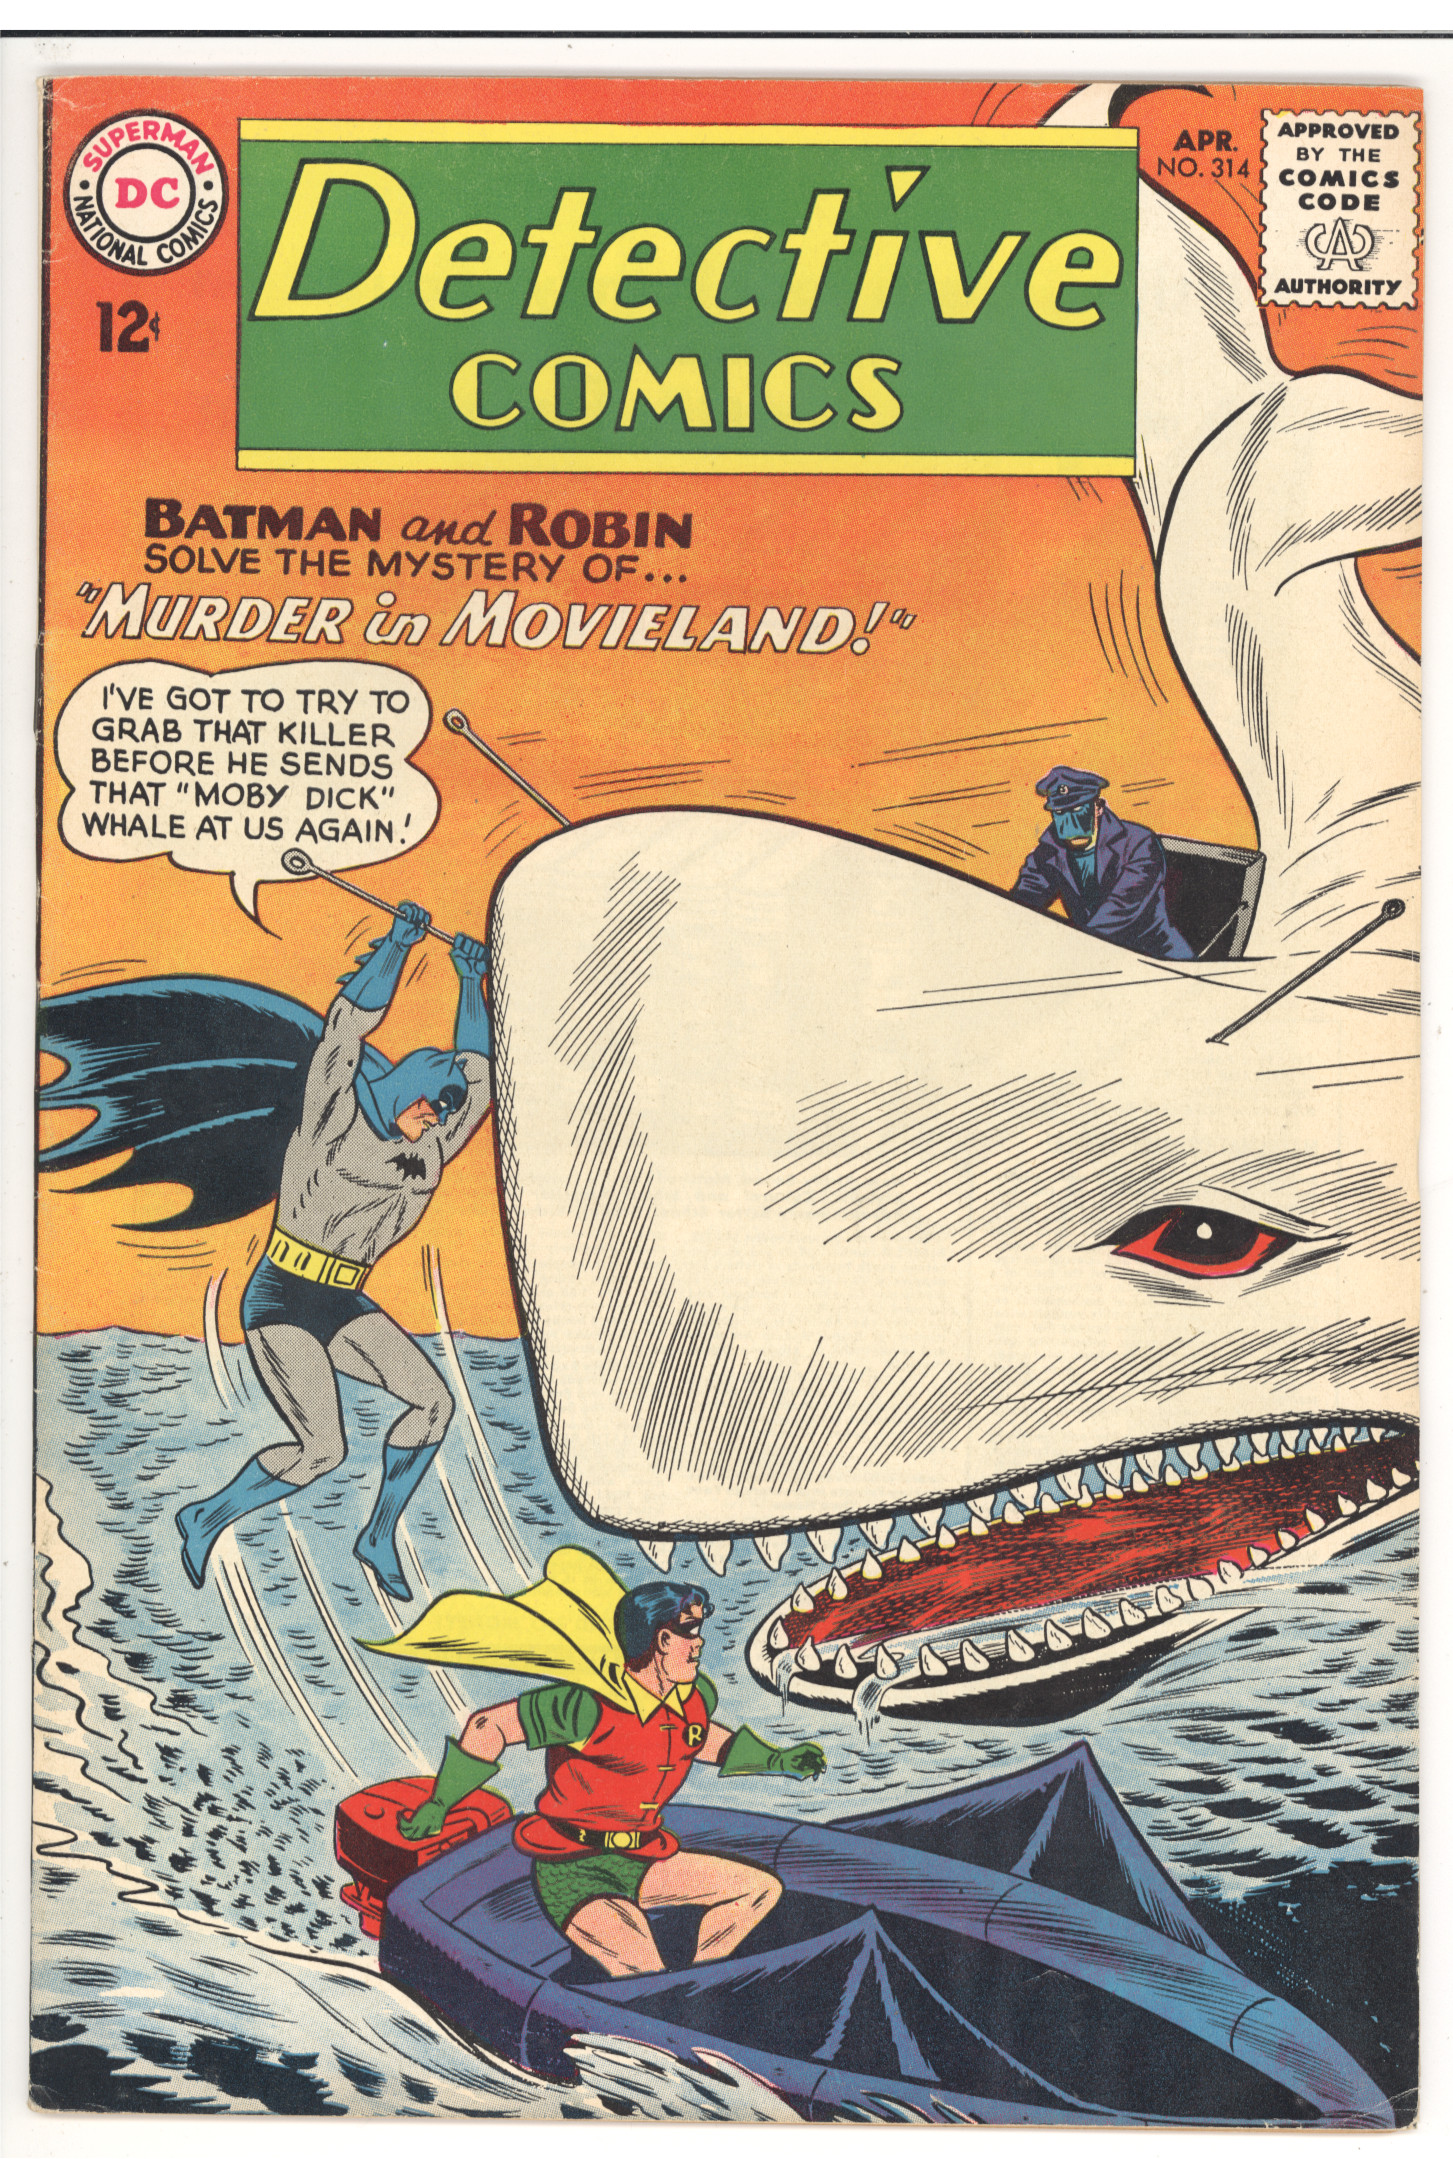 Detective Comics #314